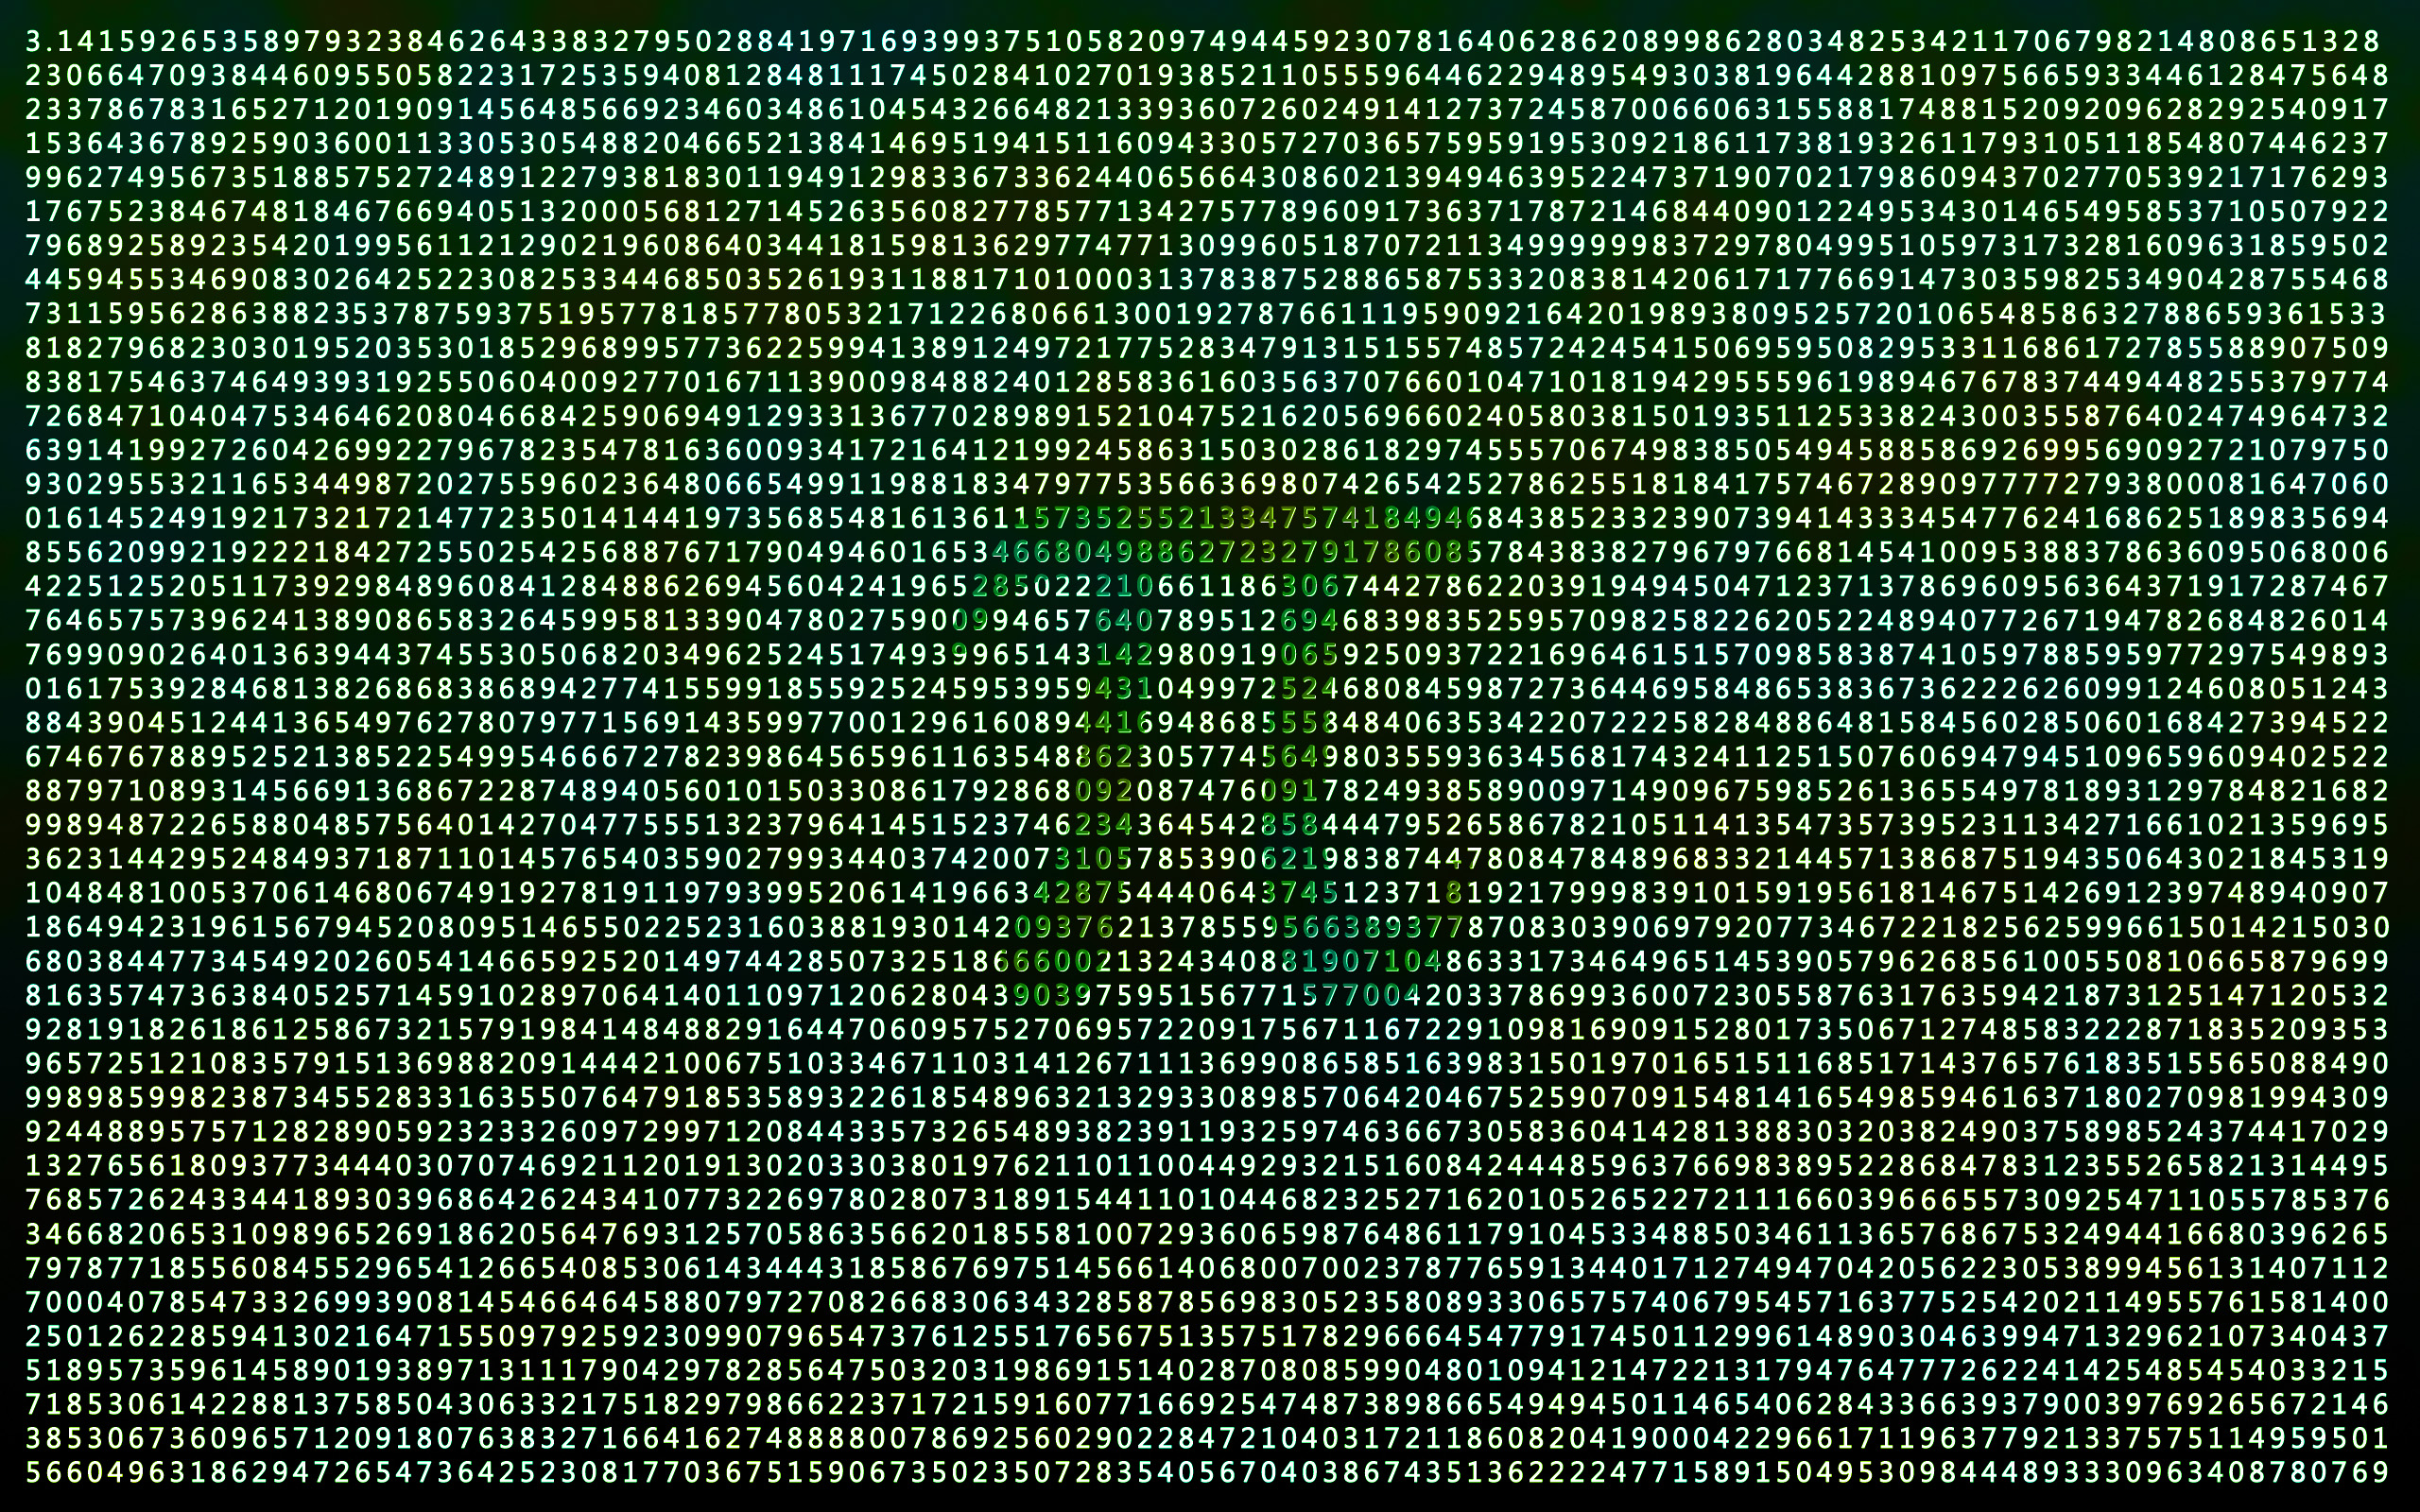 mathematics, Pi - desktop wallpaper